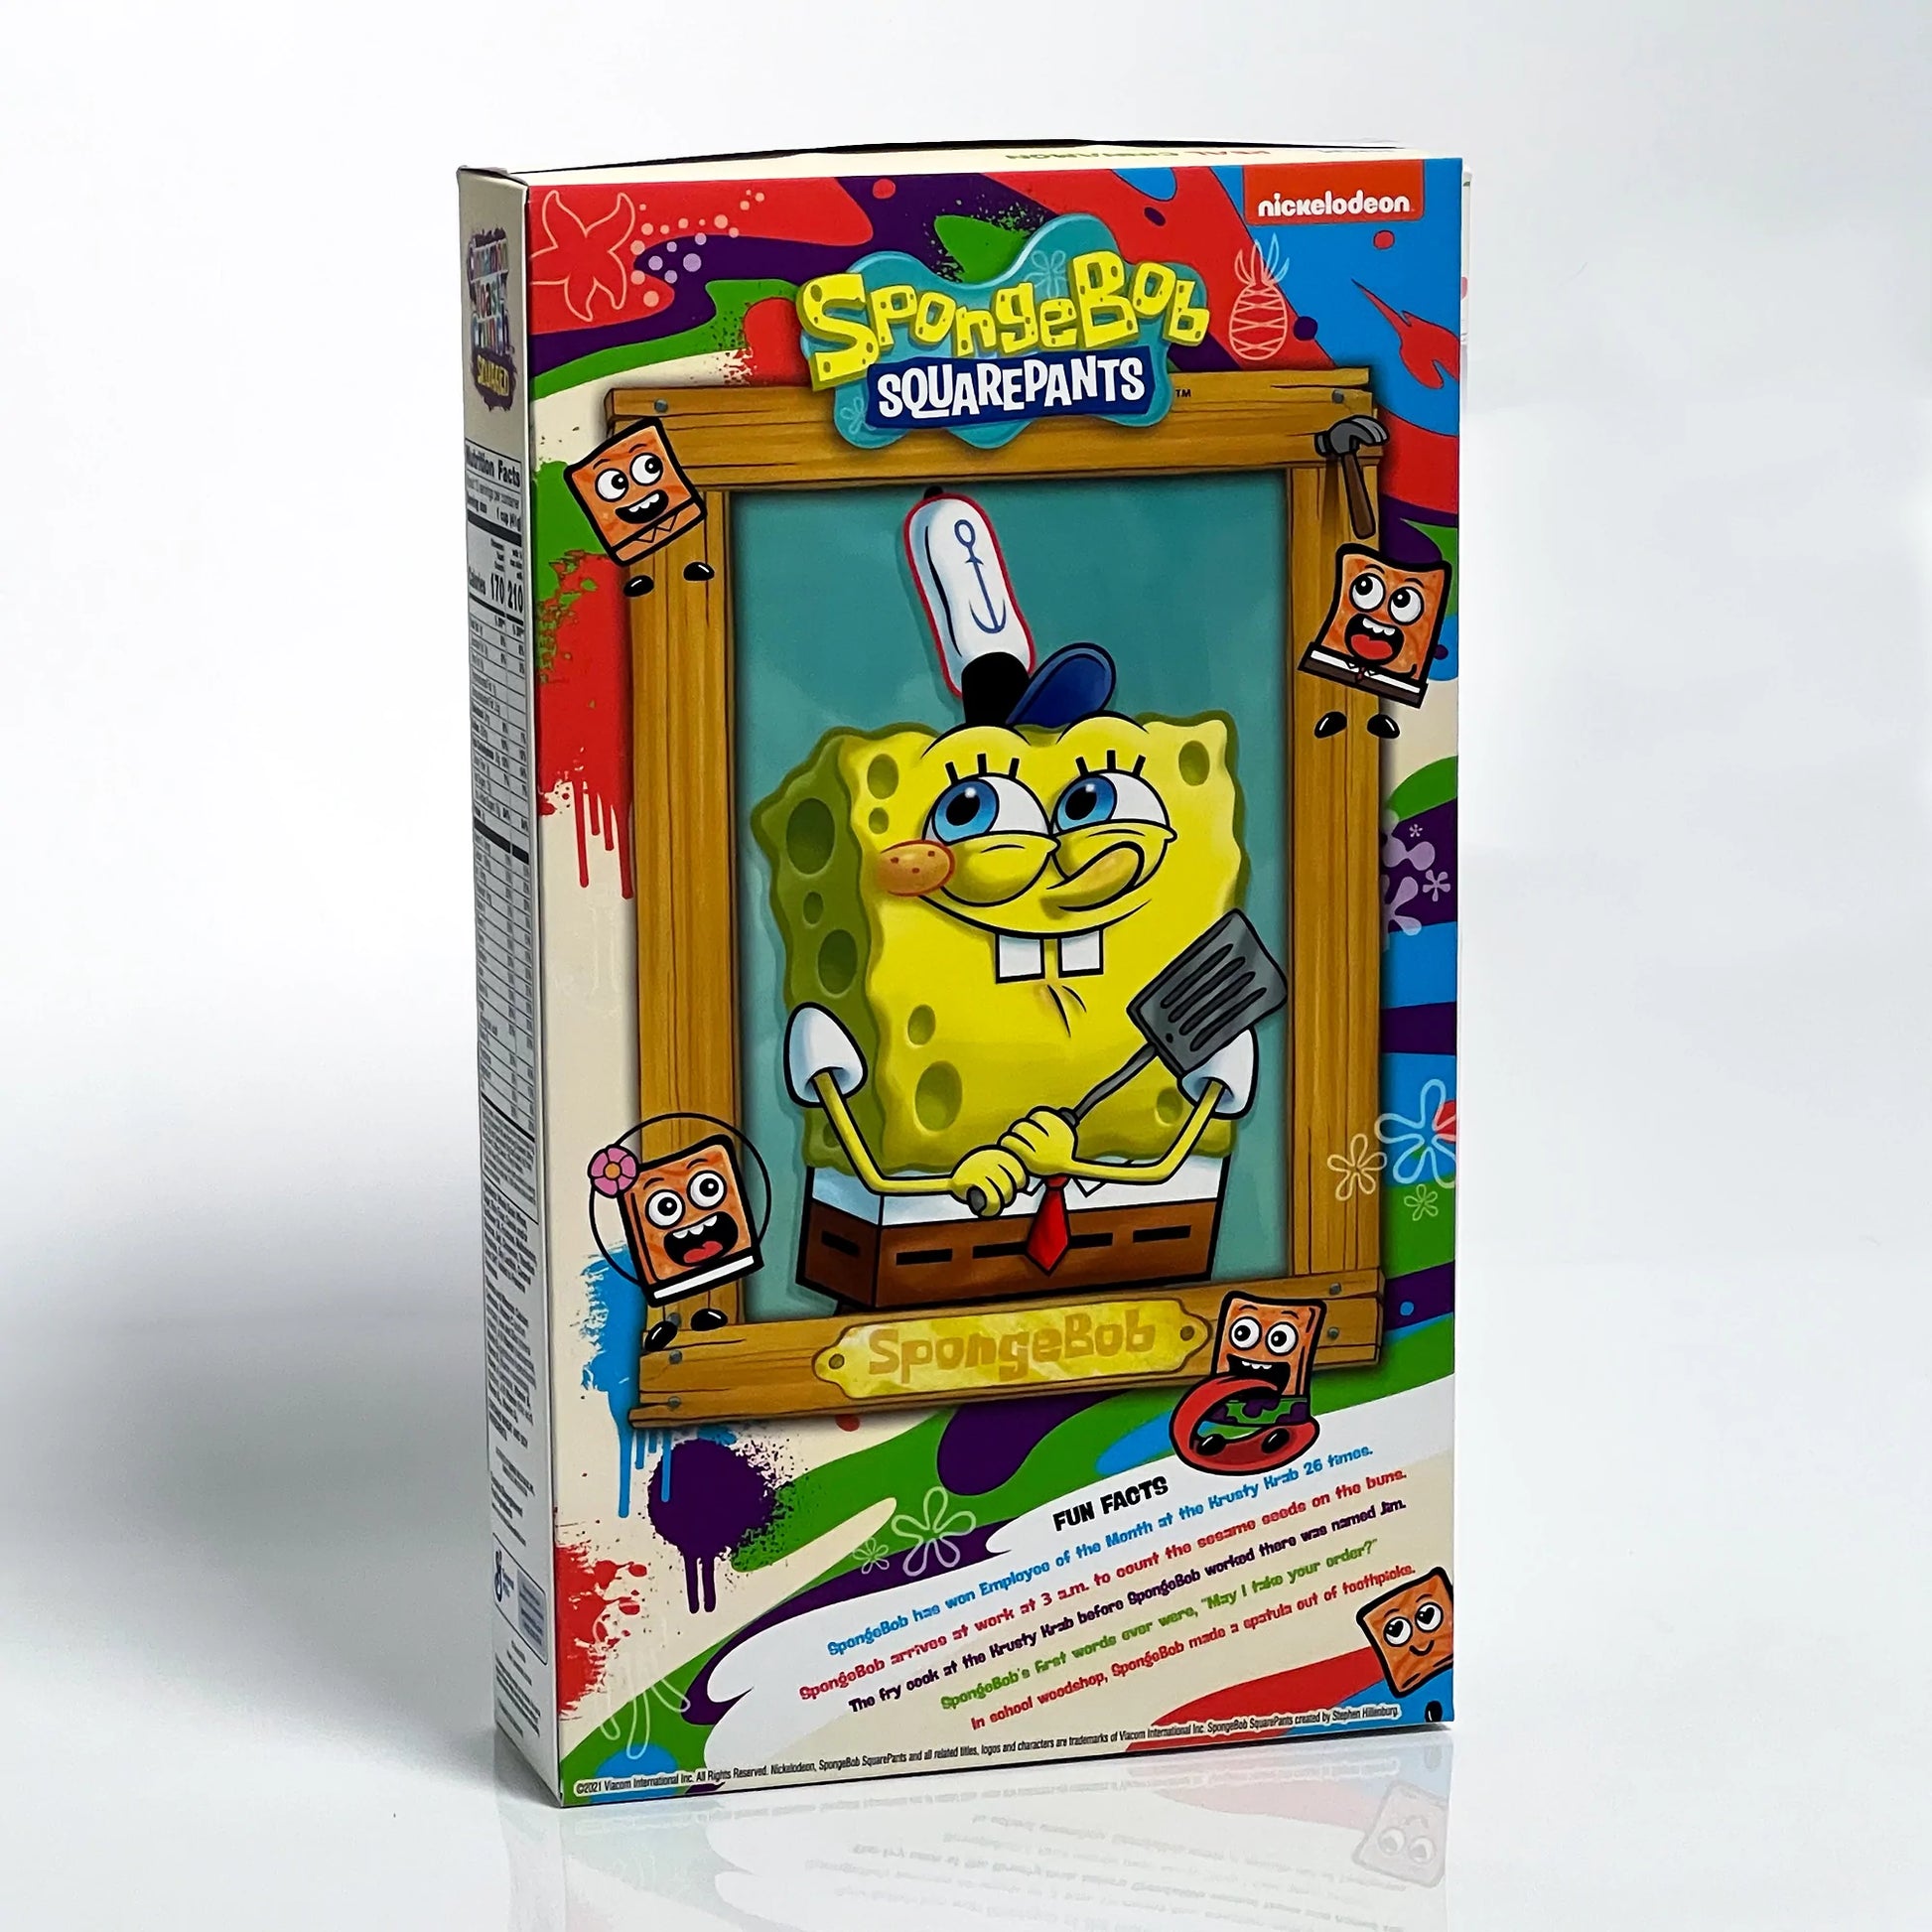 SpongeBob SquarePants Cinnamon Toast Crunch Limited Edition "da collezione" (set completo di spatola e adesivi ) chloe Kim stuff